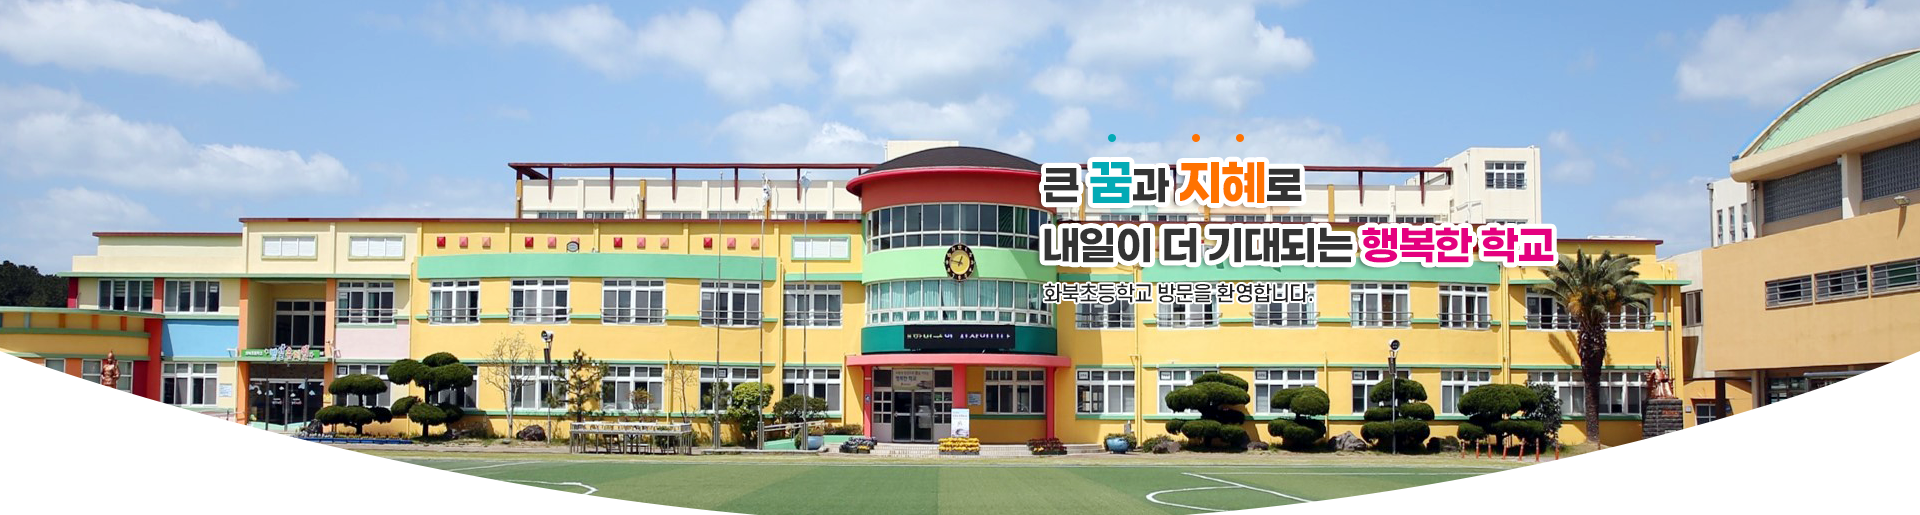 큰 꿈과 지혜로 내일이 더 기대되는 행복한 학교 화북초등학교 방문을 환영합니다.